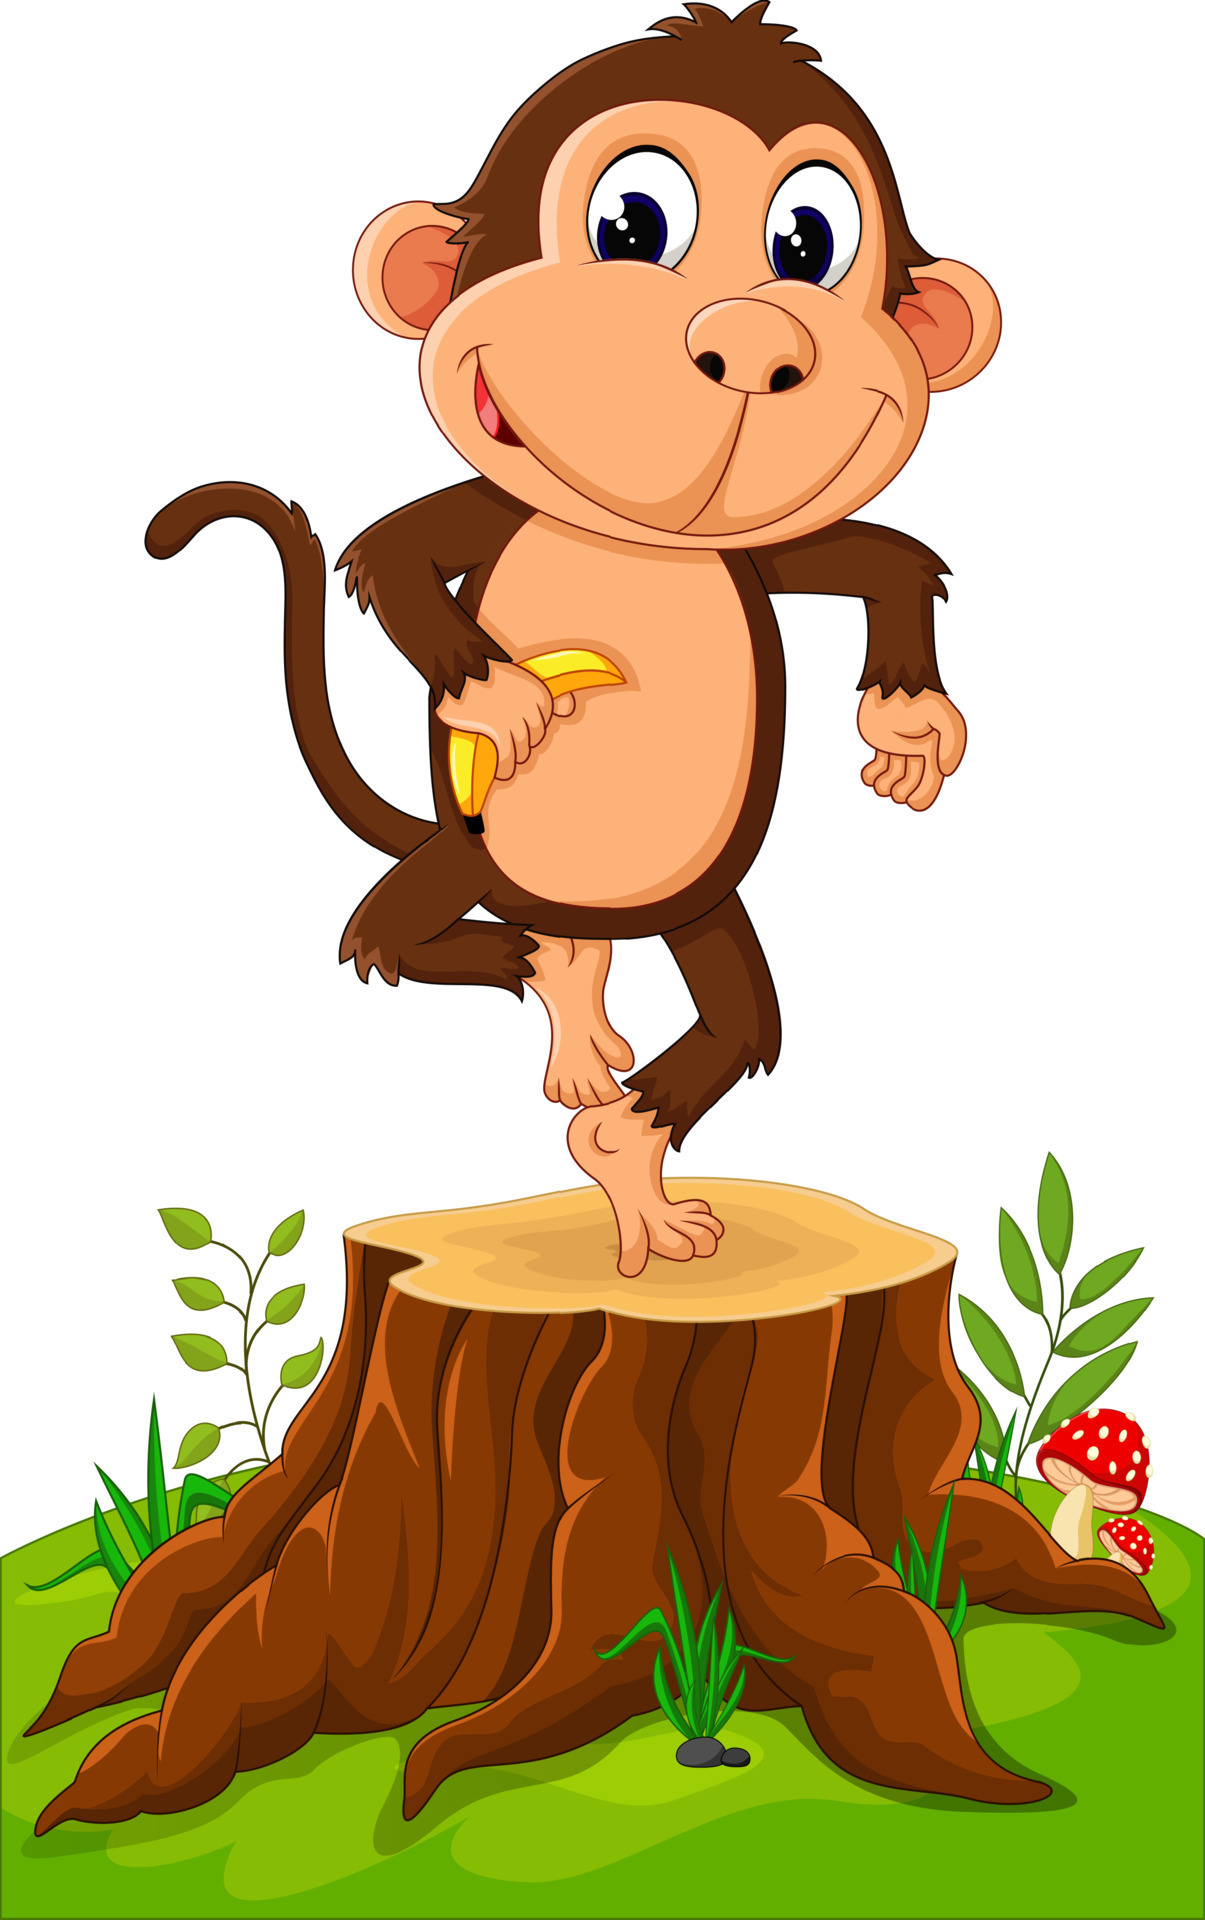 Macaco dos desenhos animados em uma árvore ramo e segurando a